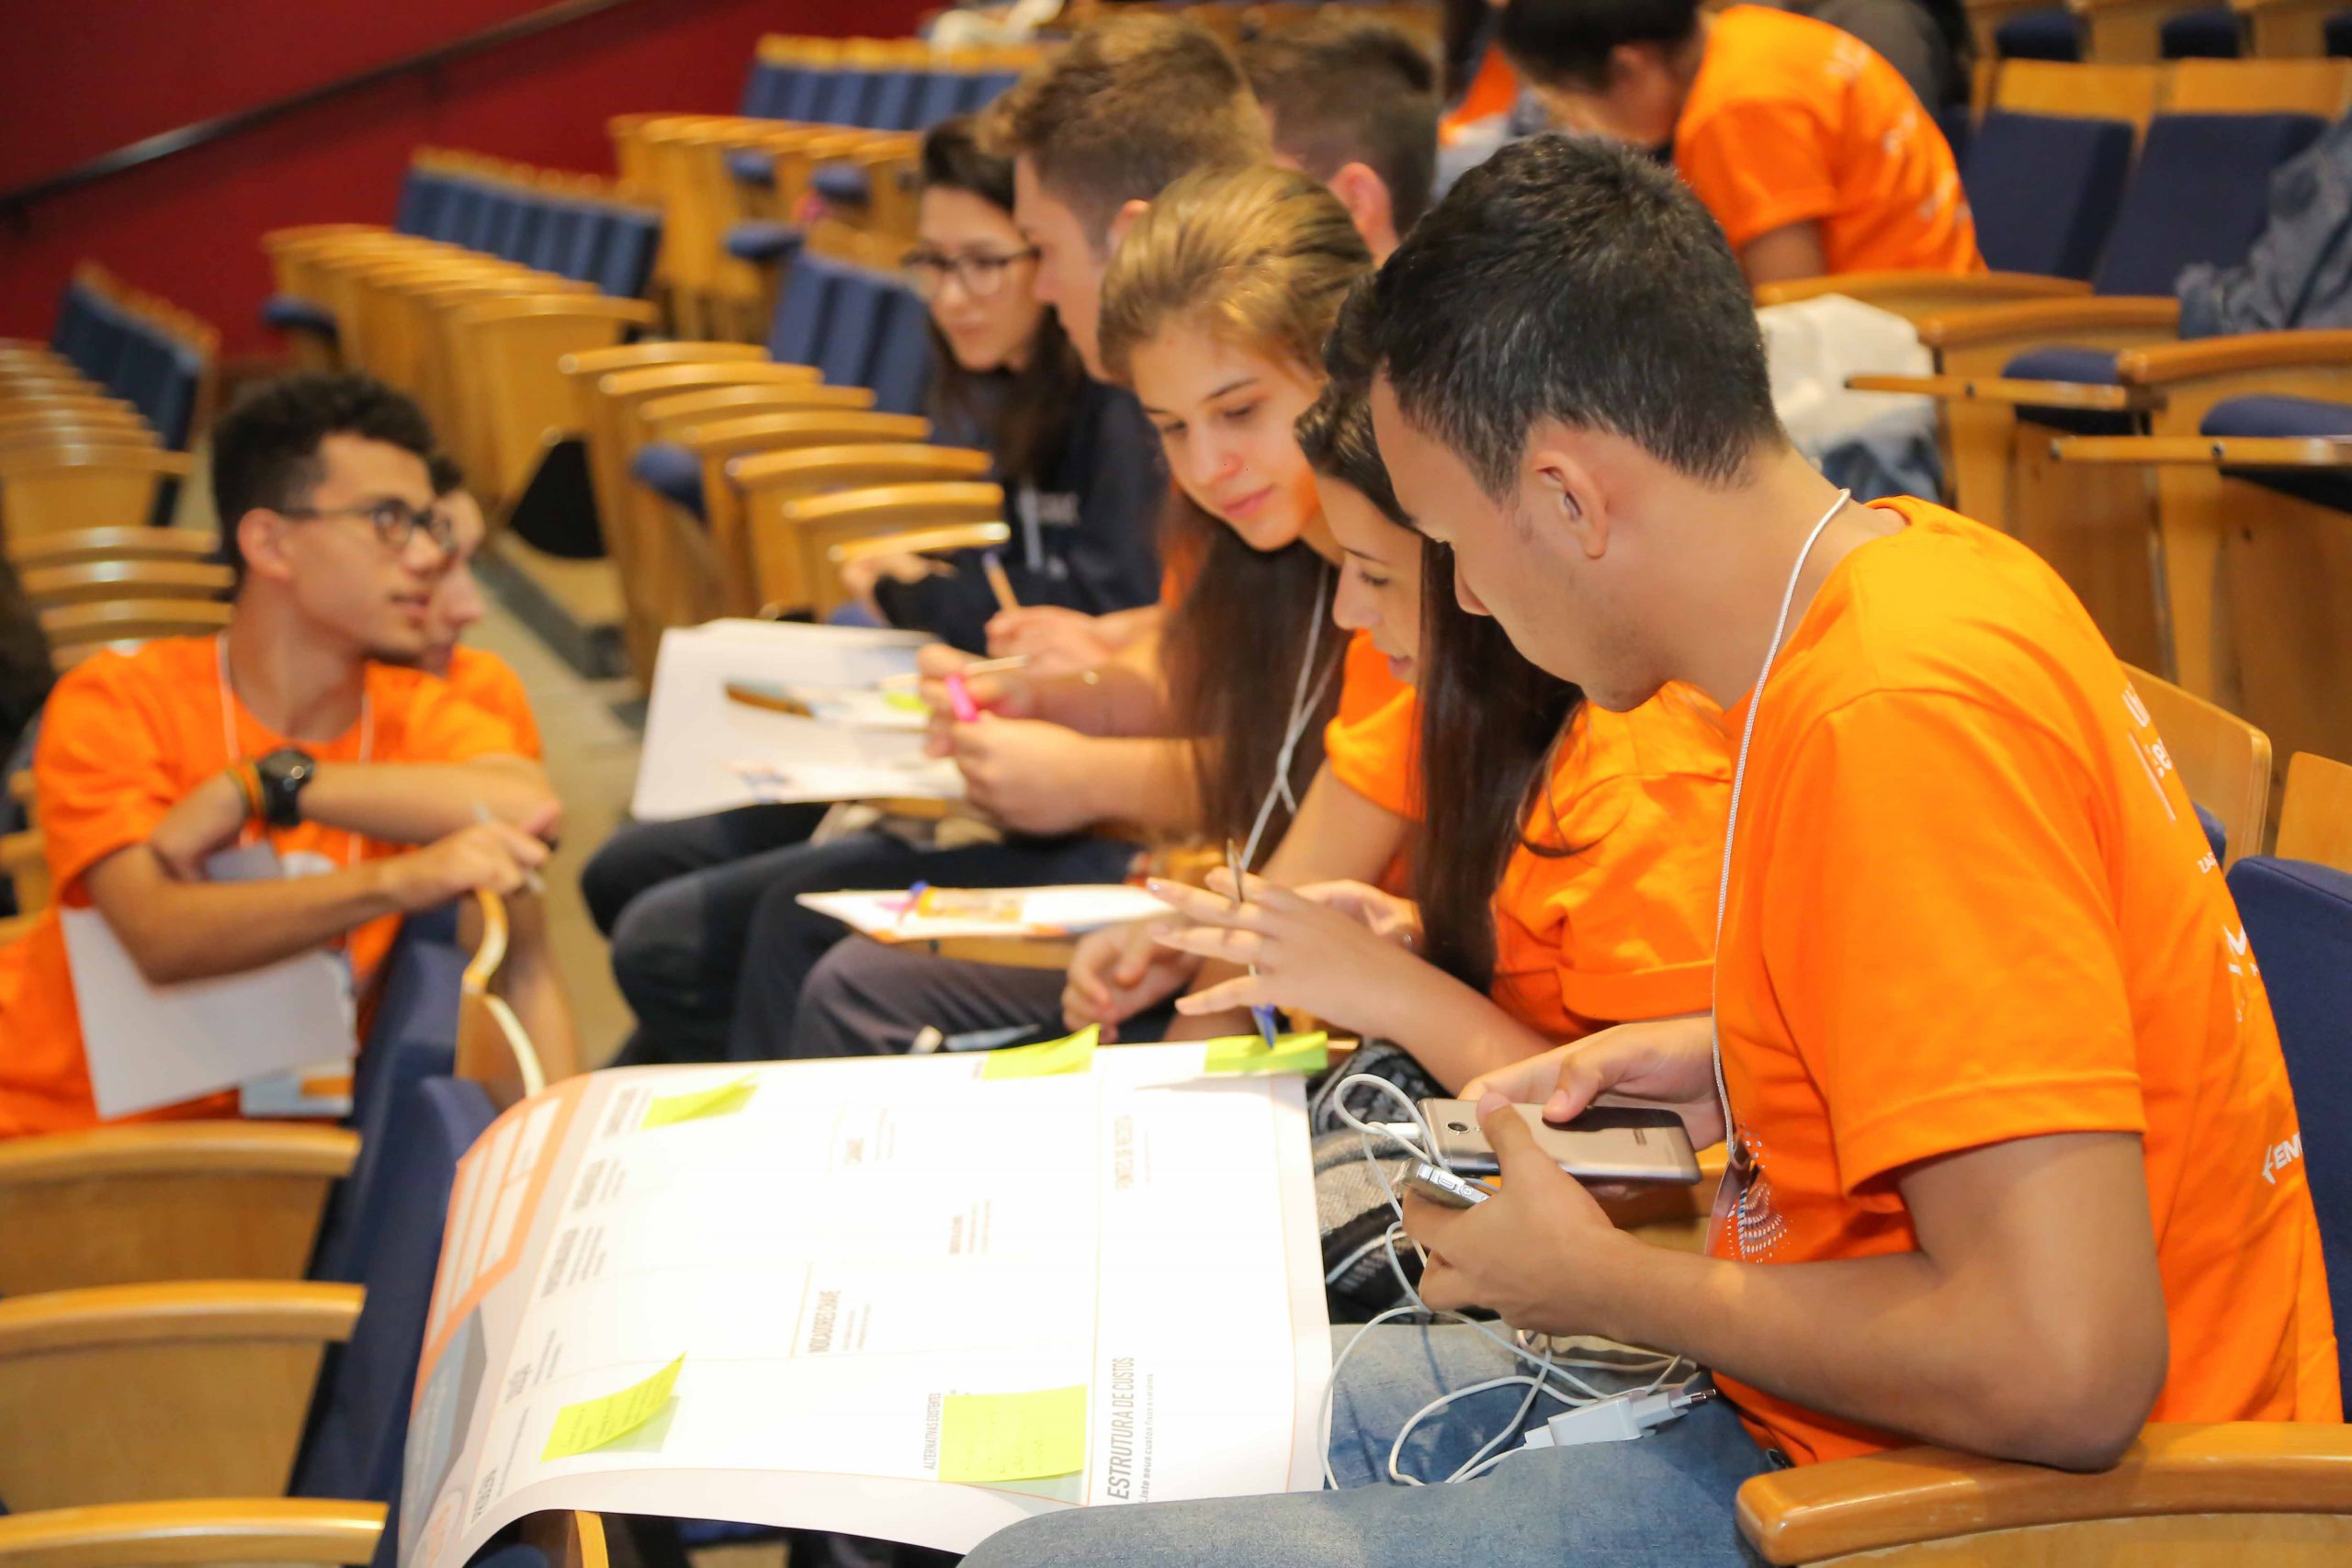 jovens sentados em um auditório com um cartaz no colo. O cartaz tem papéis colados e os jovens estão com canetas na mão e vestindo camiseta laranja.